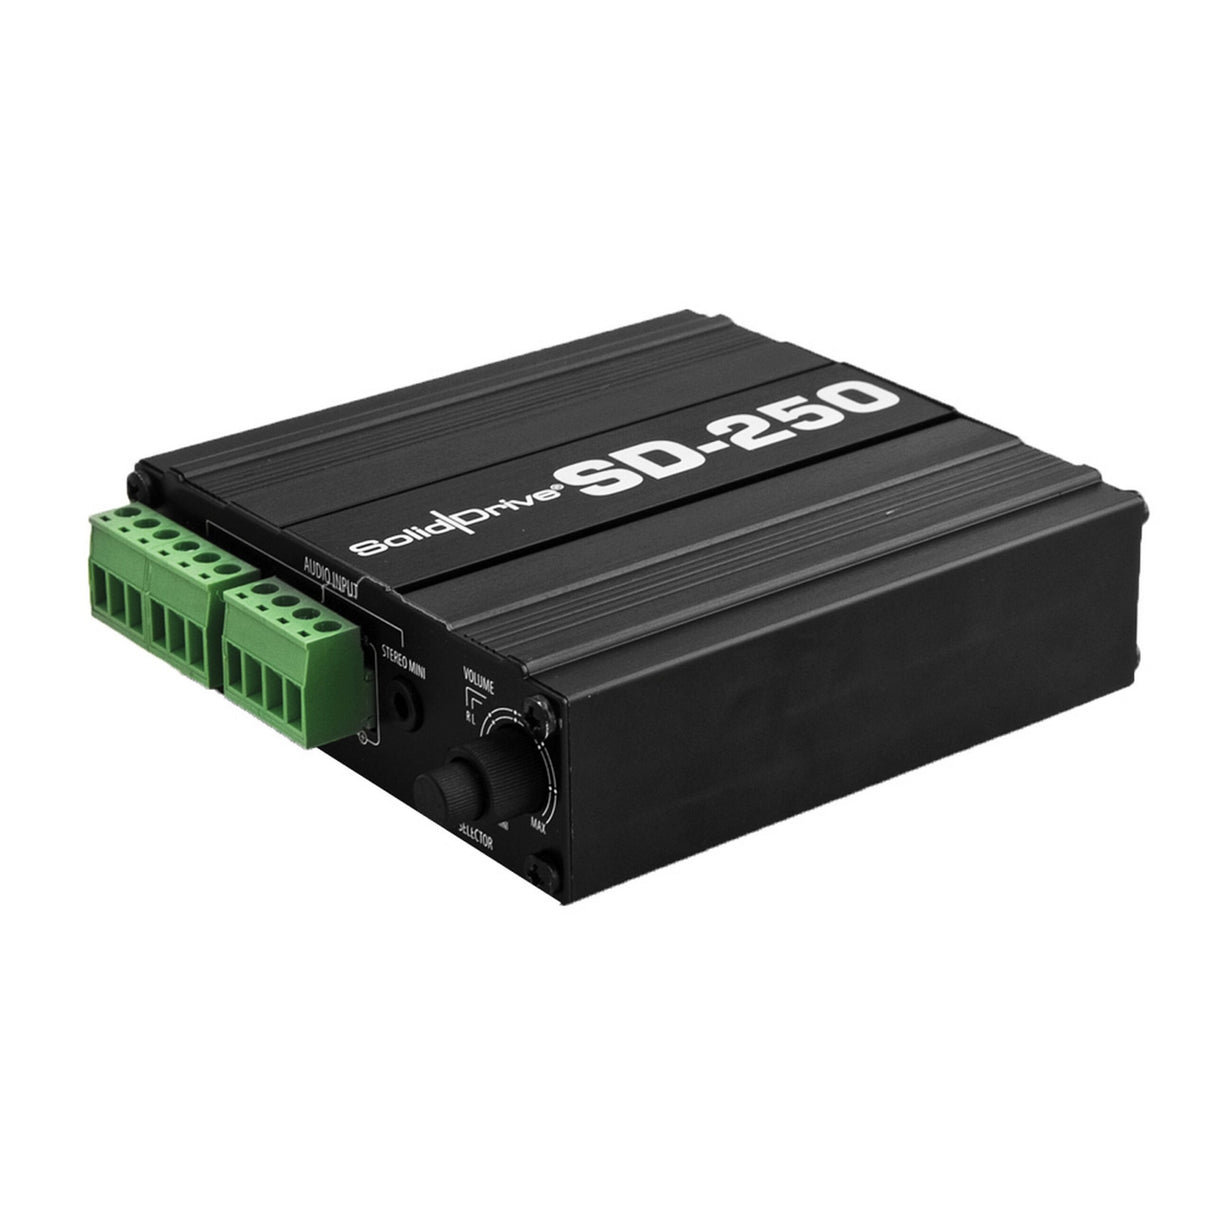 SolidDrive SD250 50-Watts Class D Amplifier